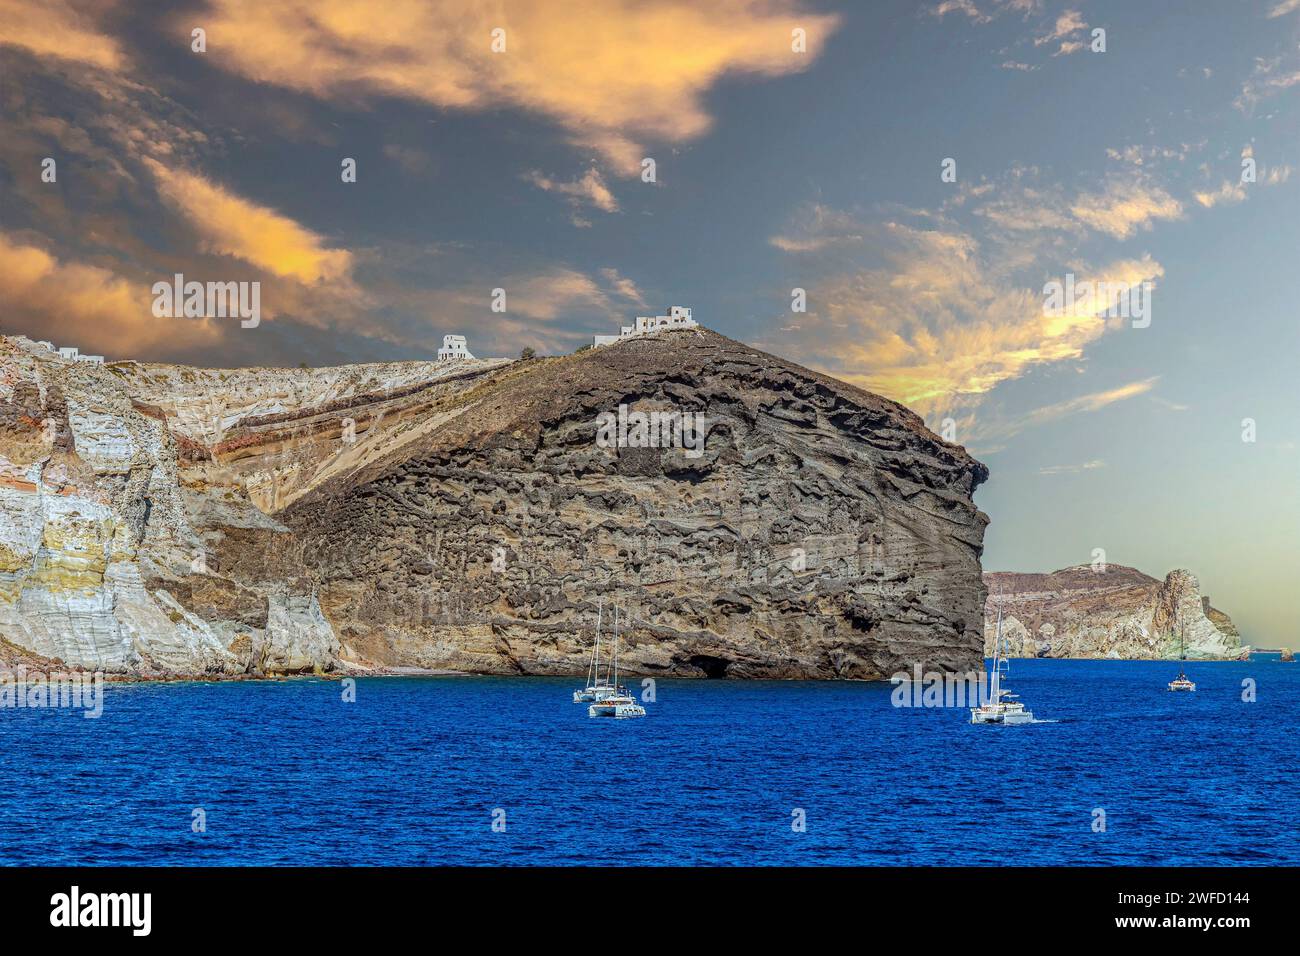 Vista panoramica della costa rocciosa vulcanica dell'isola di Santorini, con gli edifici della capitale Fira e le barche da diporto sul Mar Egeo. Luce del tramonto. Foto Stock